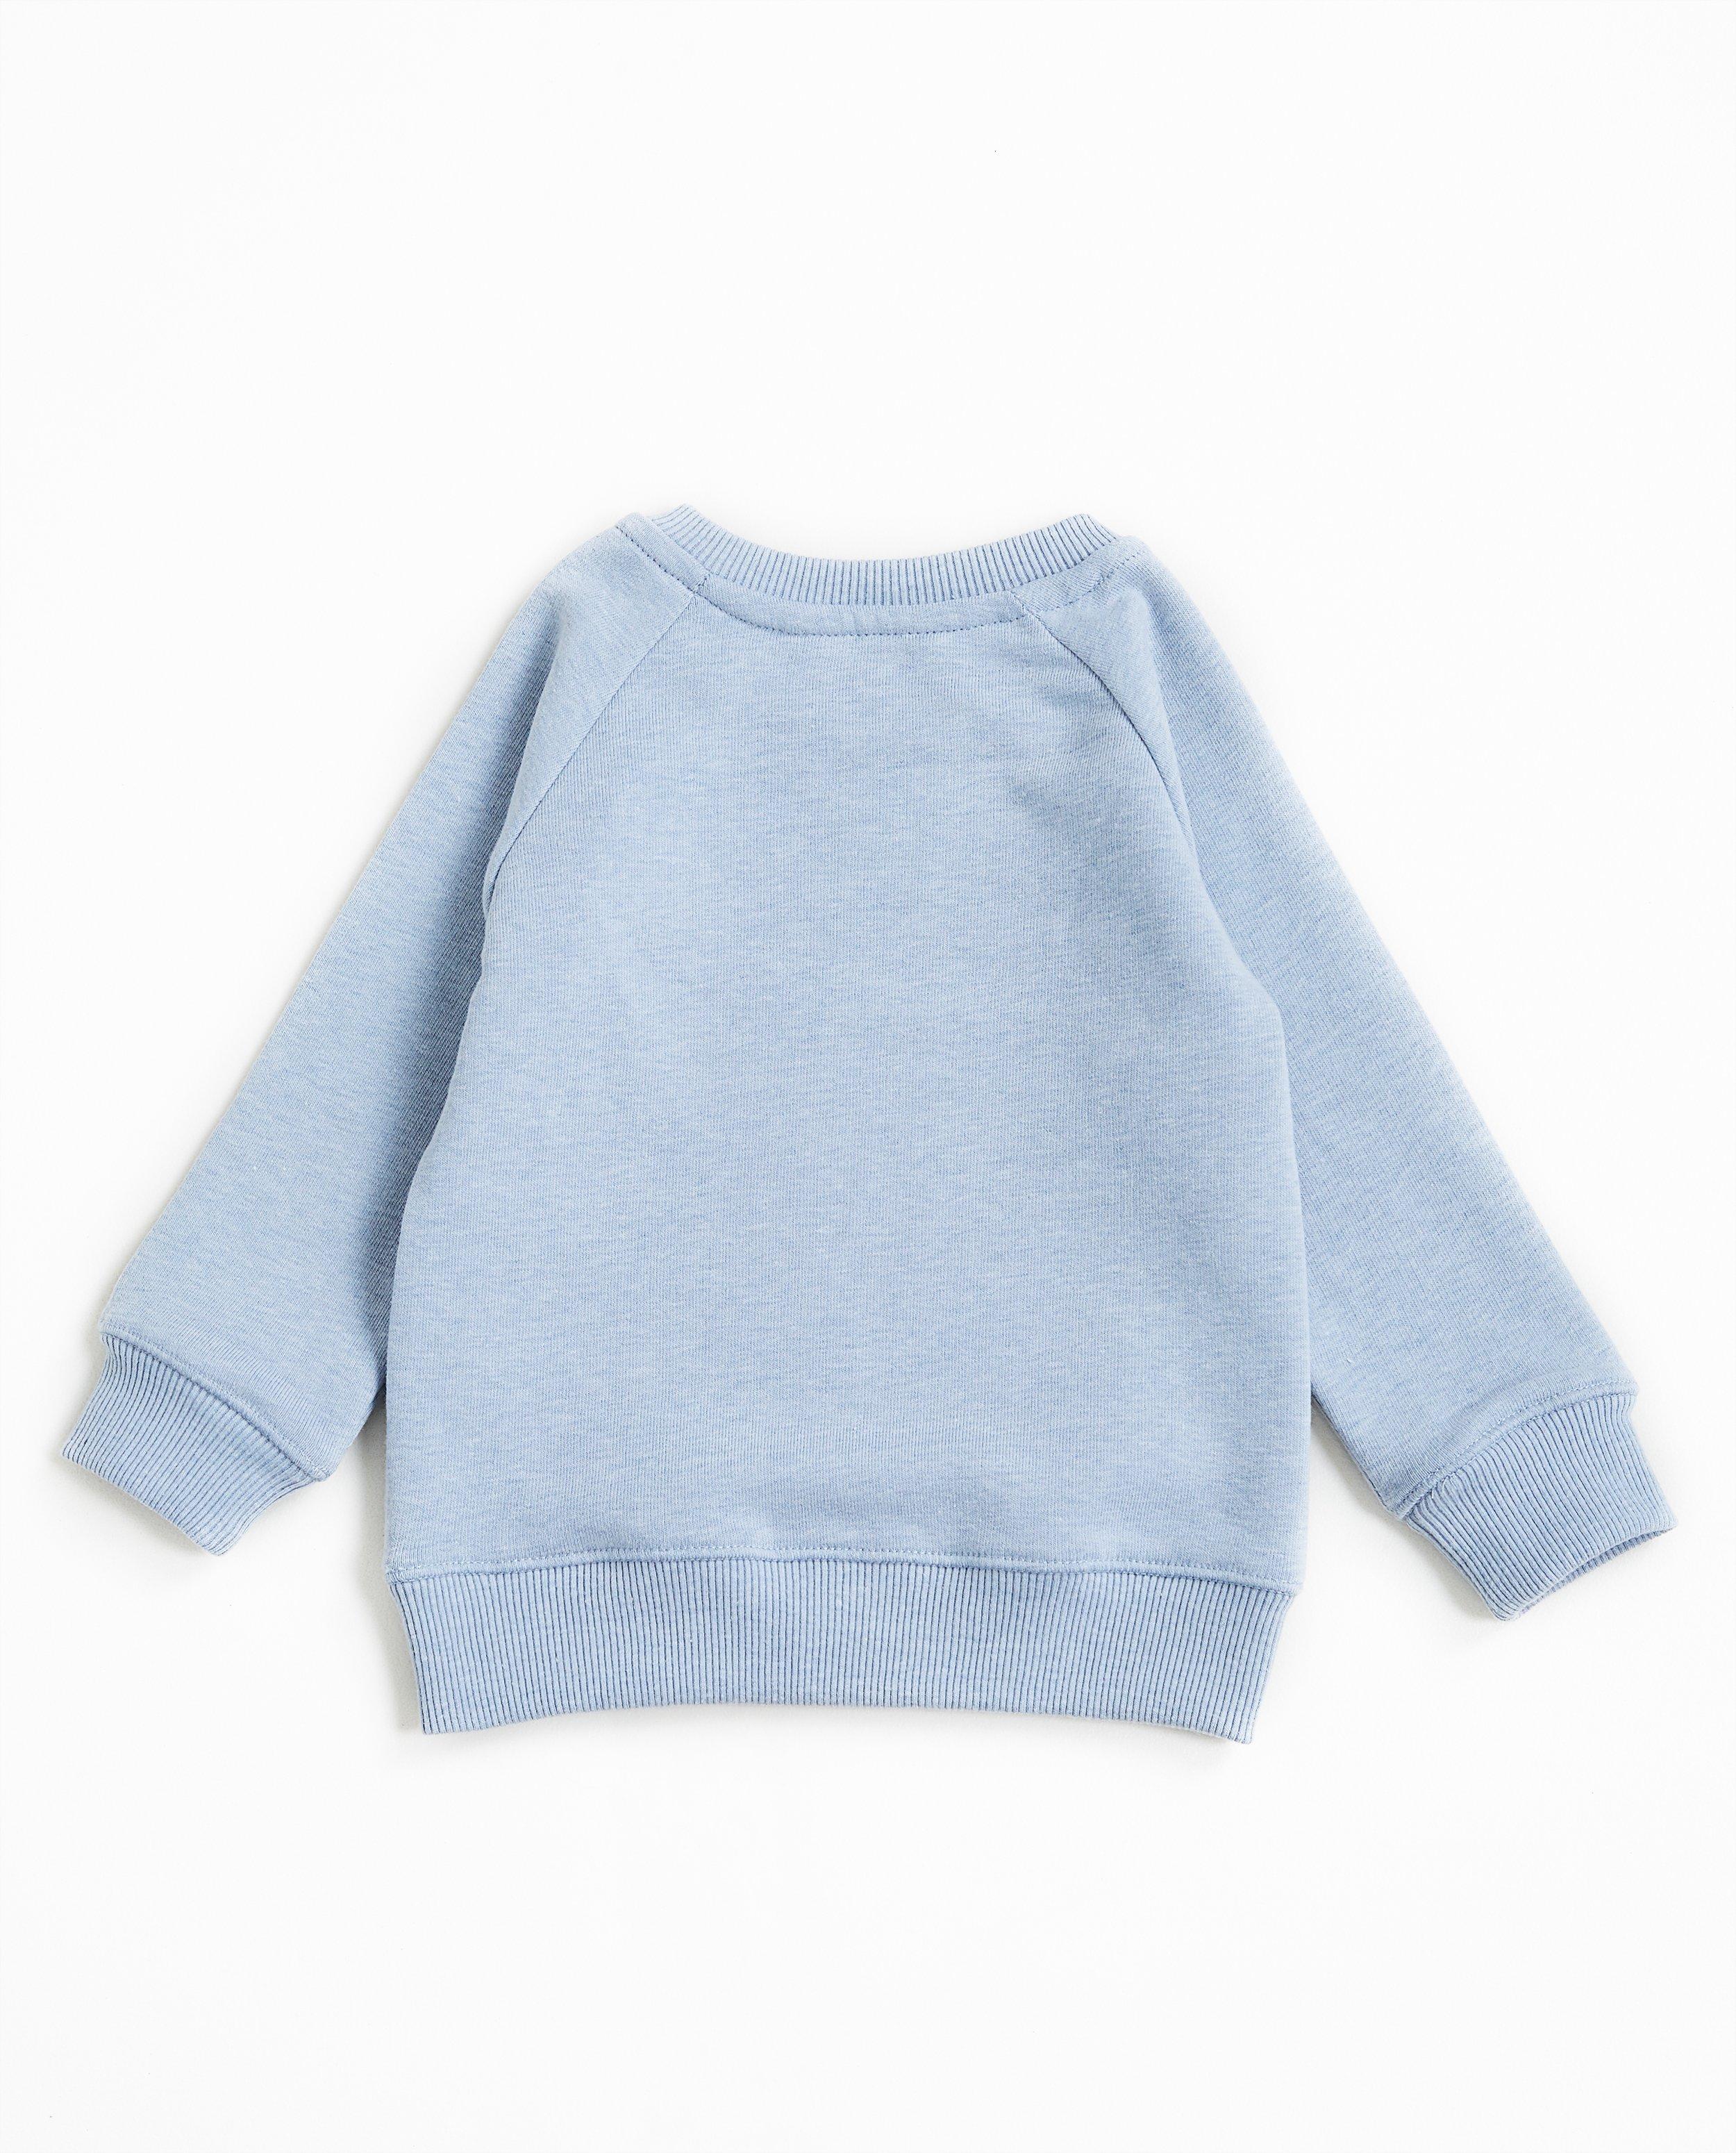 Sweaters - Hemelsblauwe sweater #familystoriesjbc